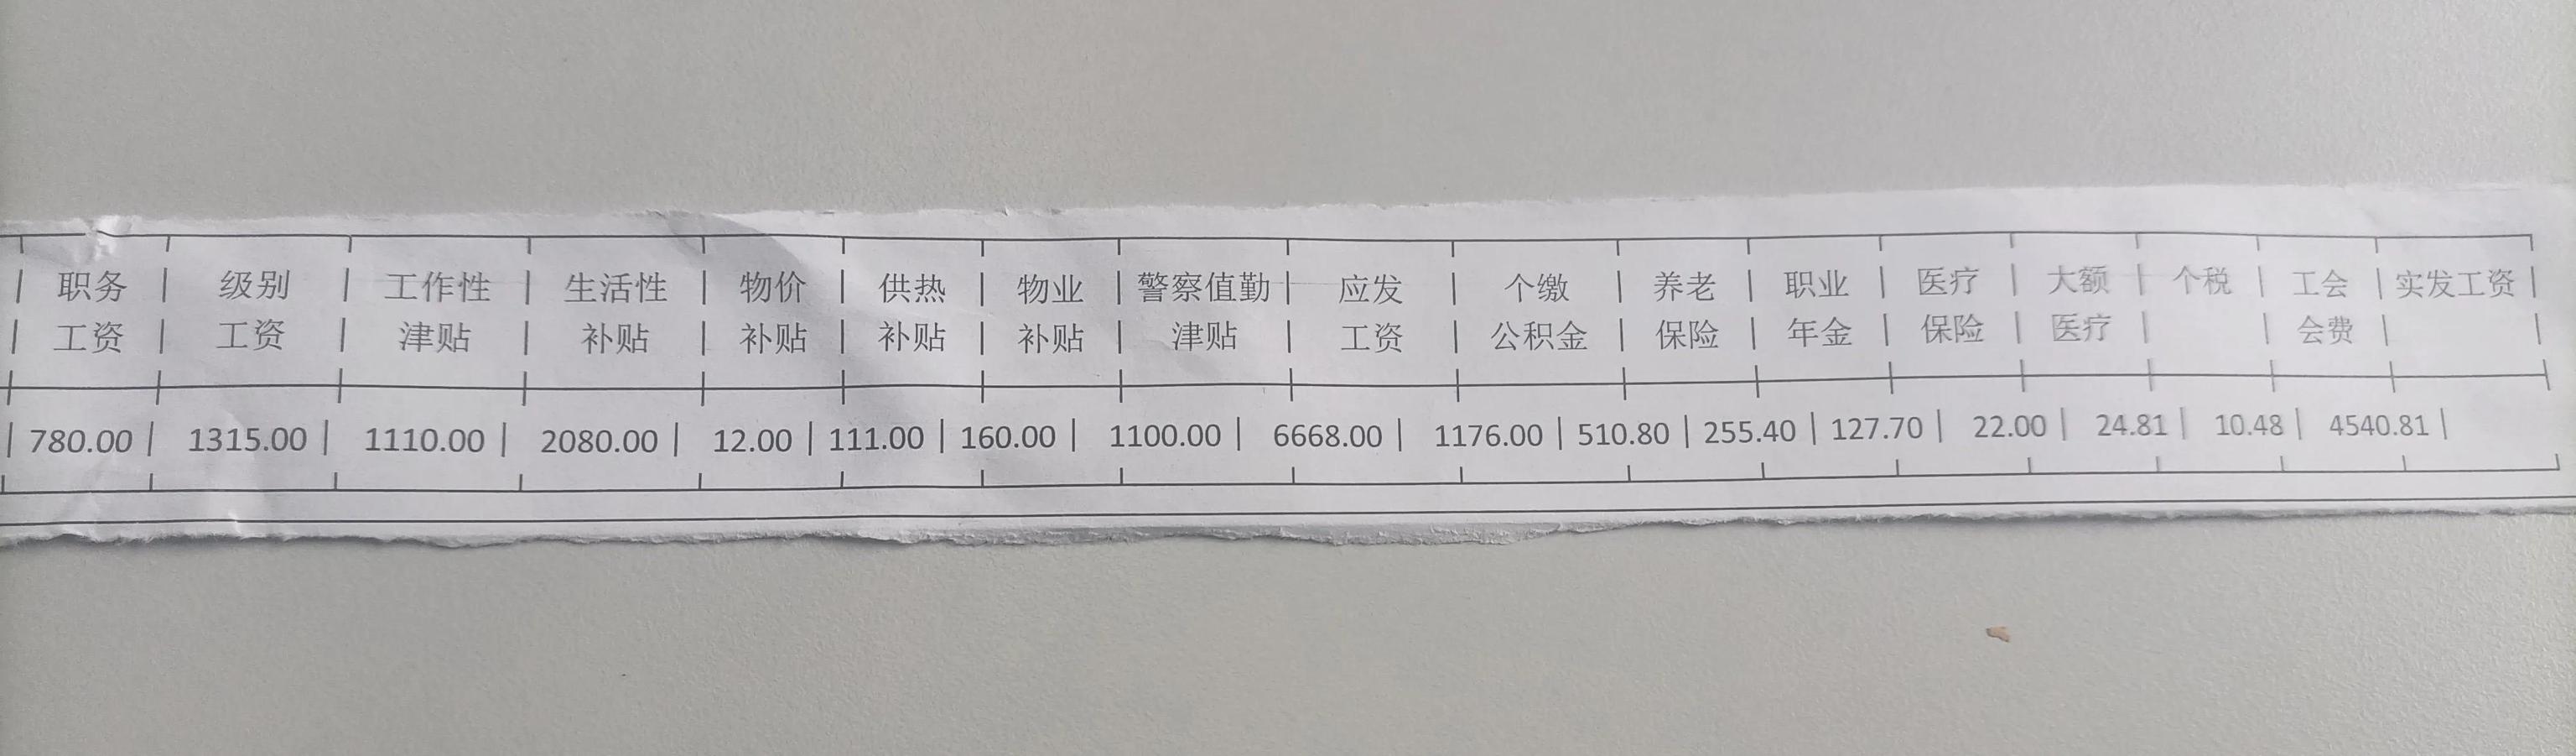 天津公务员收入多少「天津公务员一年能挣多少钱」